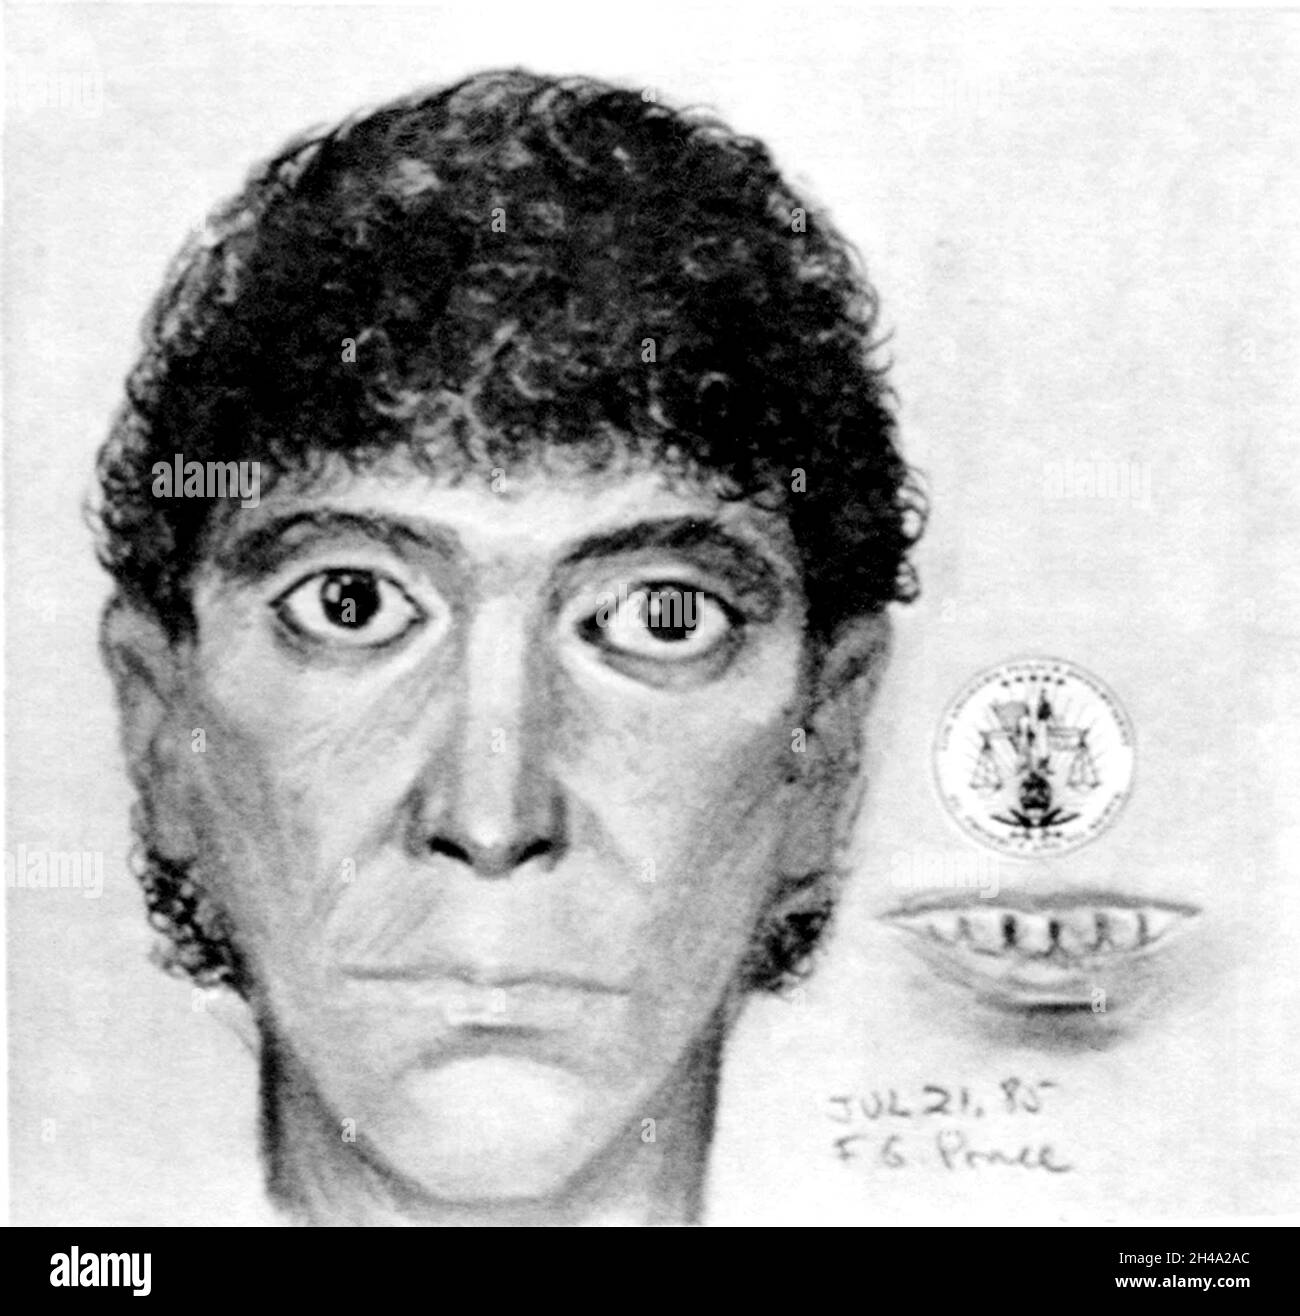 1985 , LOS ANGELES , USA : der satanistische Serienmörder RICHARD RAMIREZ ( 1960 - 2013 ), geborener Ricardo Leyva Munoz Ramírez , forensischer Künstler's Identikit Impression von Los Angeles Police Department , mit Schwerpunkt auf seinen "prallen Augen" und verfaulten, stinkenden Mund . Ramirez „The Night Stalker“ war auch ein Serienvergewaltiger, ein Entführer, ein Kinderschänker und Einbrecher, ein amerikanischer Spree-Mörder, der vom 17. märz bis zum 31. august 1985 mindestens 13 Menschen ermordet hat. Unbekannter Fotograf .- SERIENMÖRDER - Porträt - ritratto - Serienmörder - Assassino seriale - CRONACA NERA - criminale - kriminell - SERIENMÖRDER KILLE Stockfoto